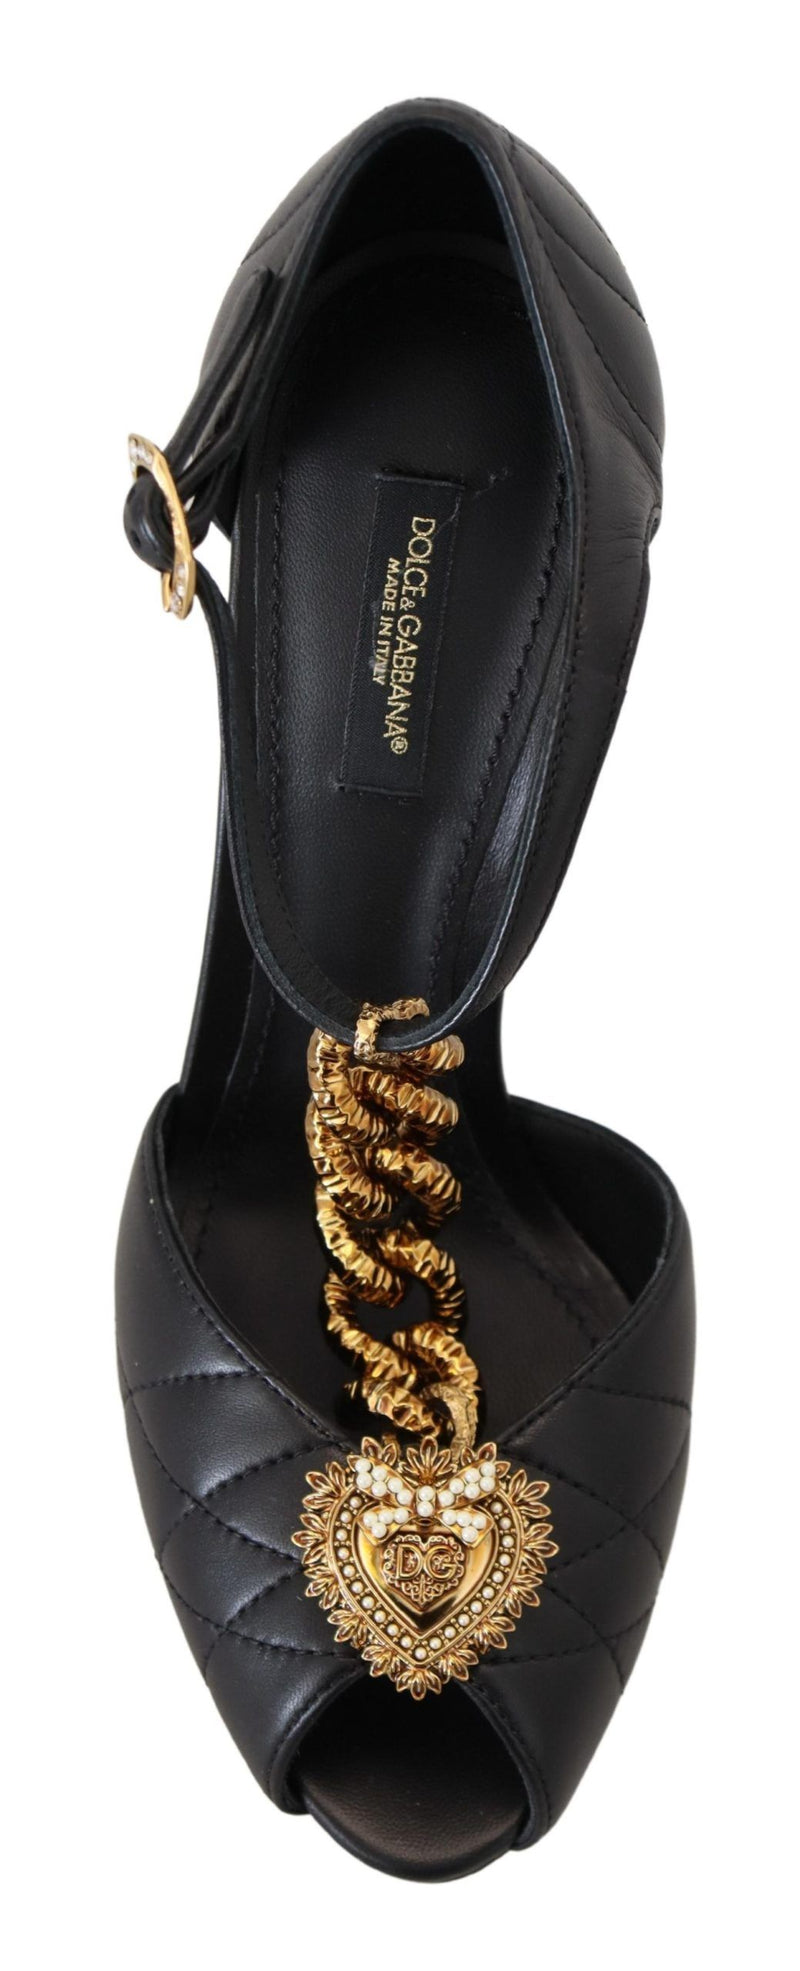 Dolce & Gabbana Elegant Gold-Embellished Leather Women's Sandals